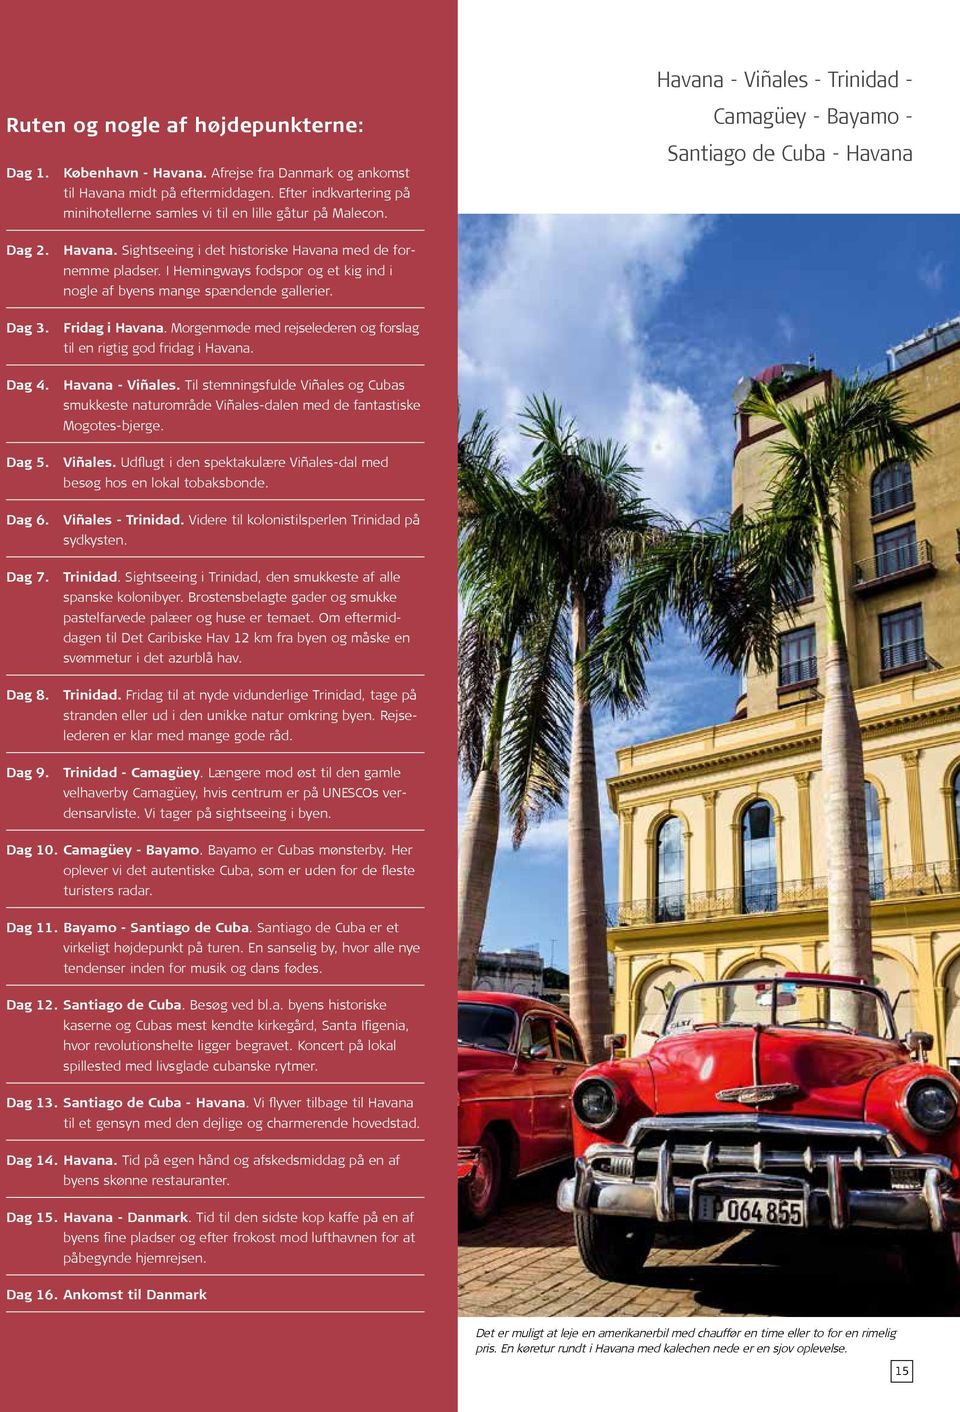 I Hemingways fodspor og et kig ind i nogle af byens mange spændende gallerier. Dag 3. Fridag i Havana. Morgenmøde med rejselederen og forslag til en rigtig god fridag i Havana. Dag 4.